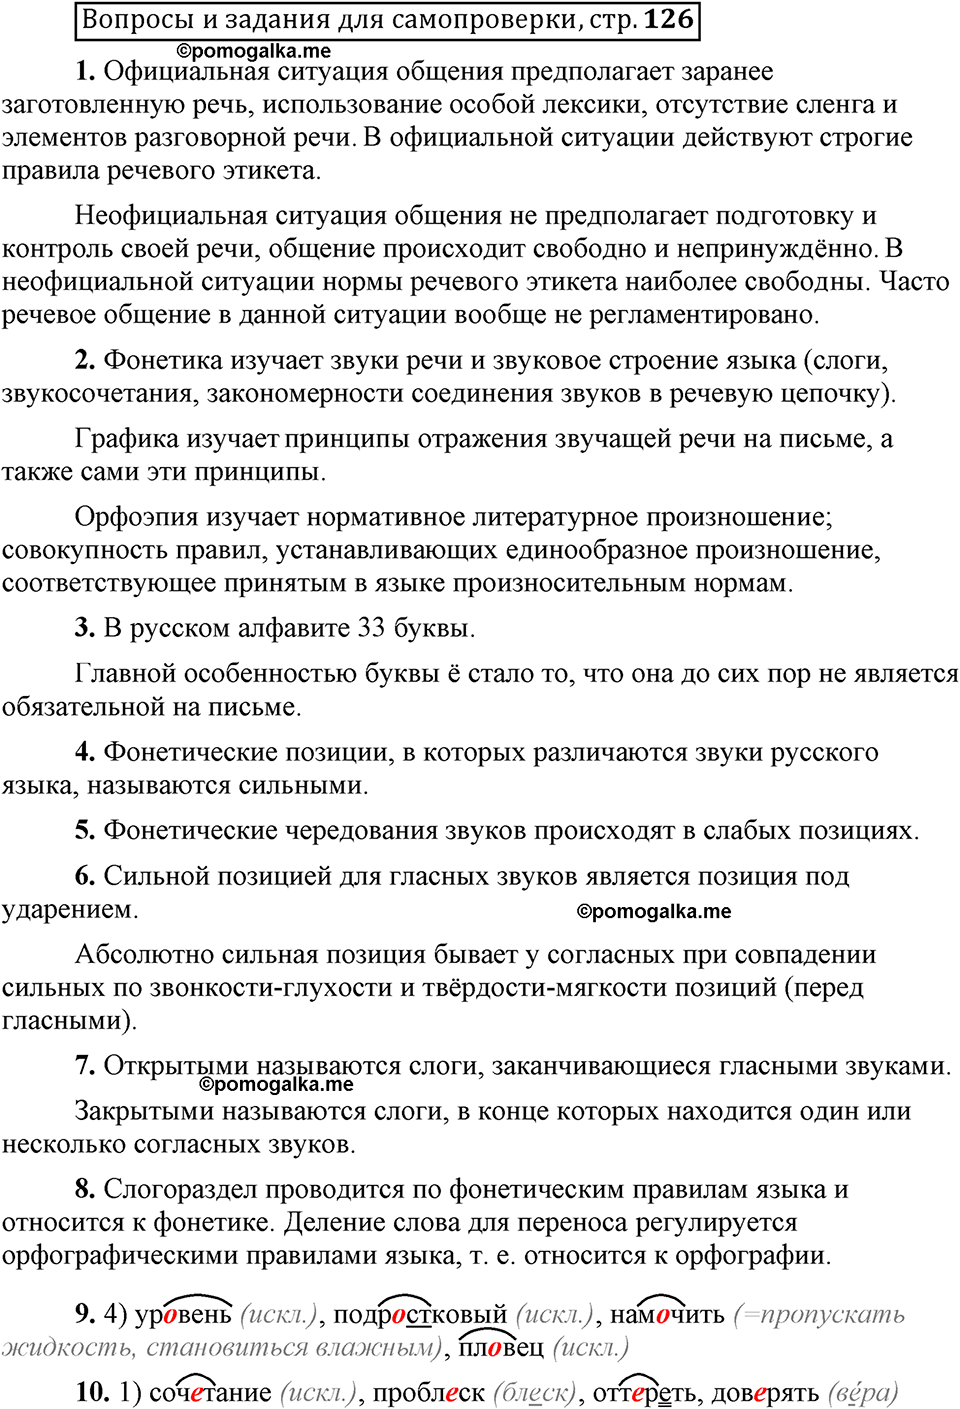 Страница 126 вопросы для самопроверки русский язык 6 класс Шмелёв